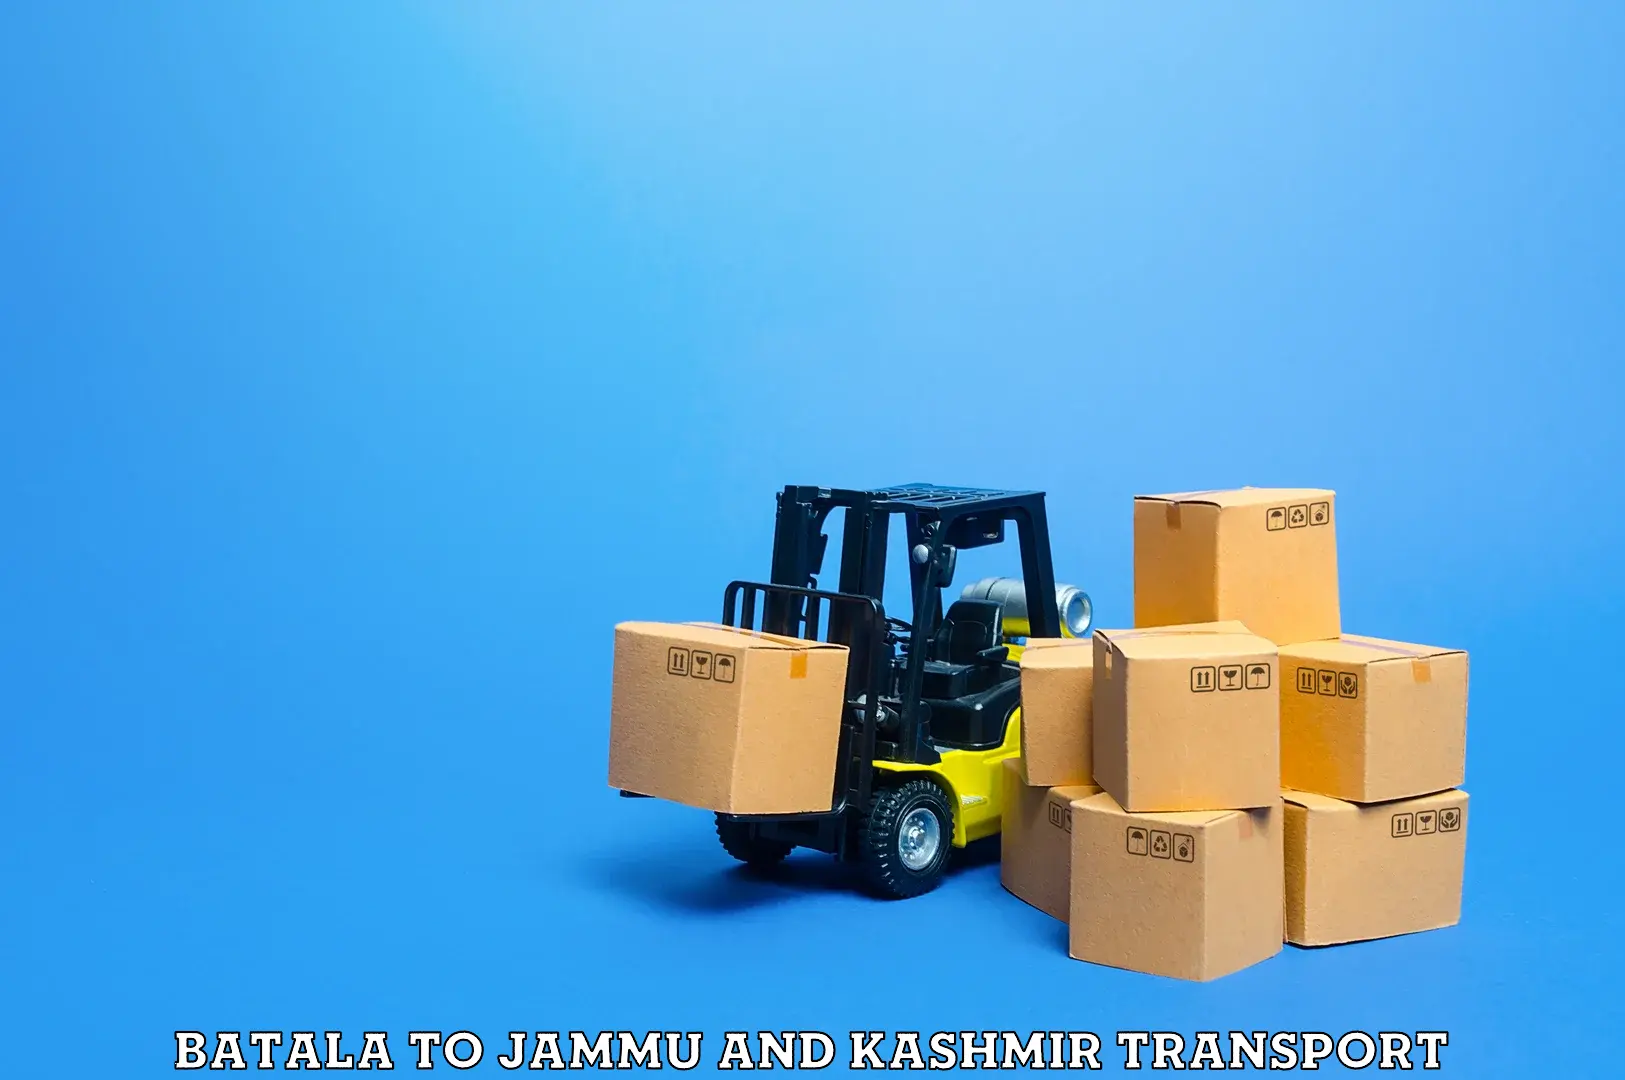 Daily parcel service transport Batala to University of Jammu